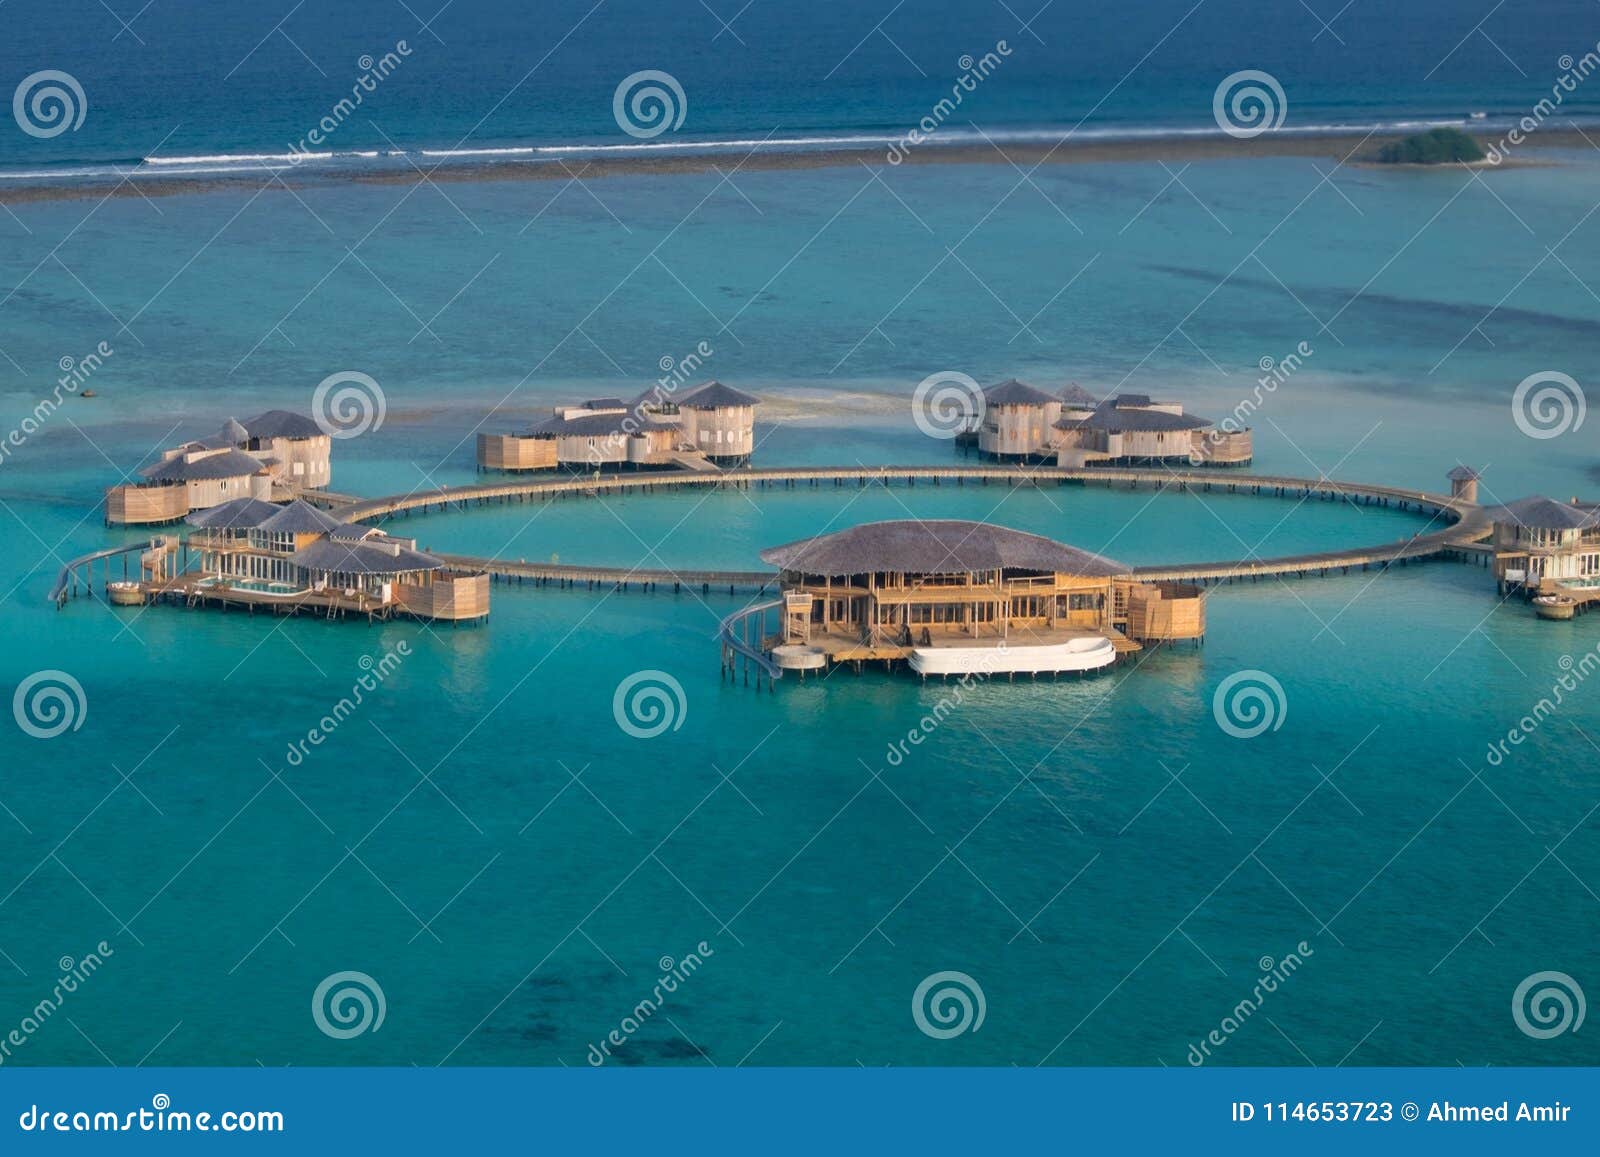 Soneva Jani Resort Medhufaru Maldives Stock Image Image Of